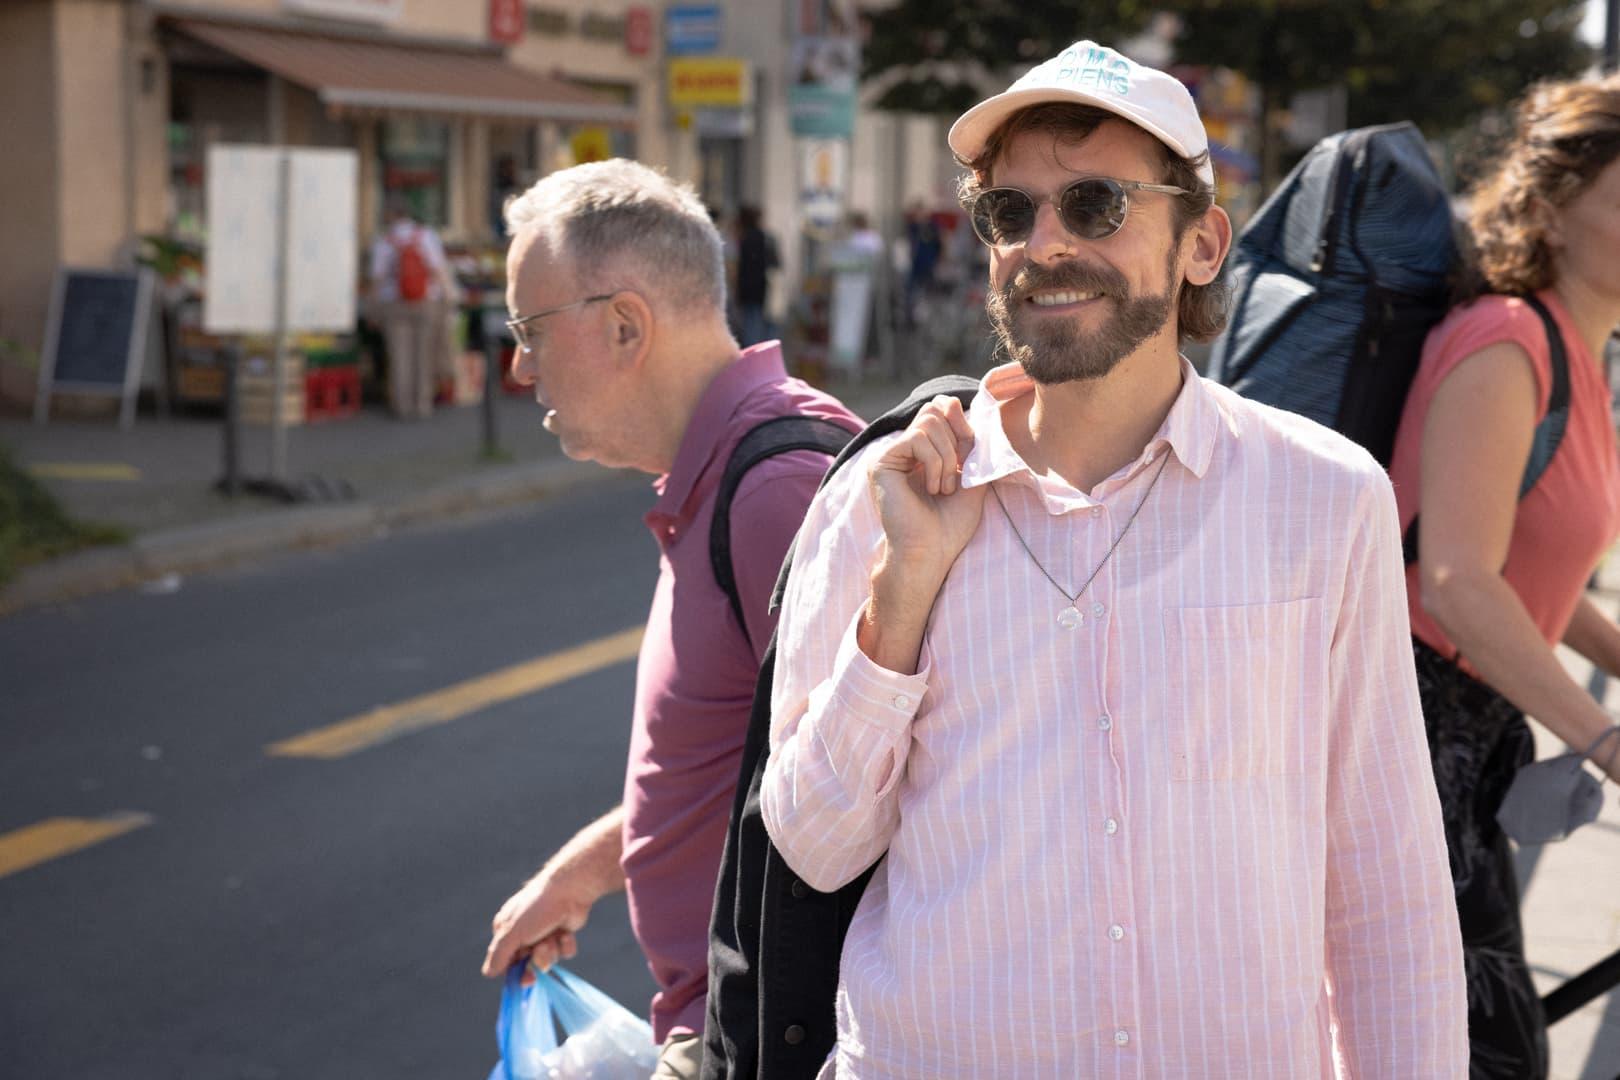 Mann mit Rosa Hemd und rosa Cap in einer Straße